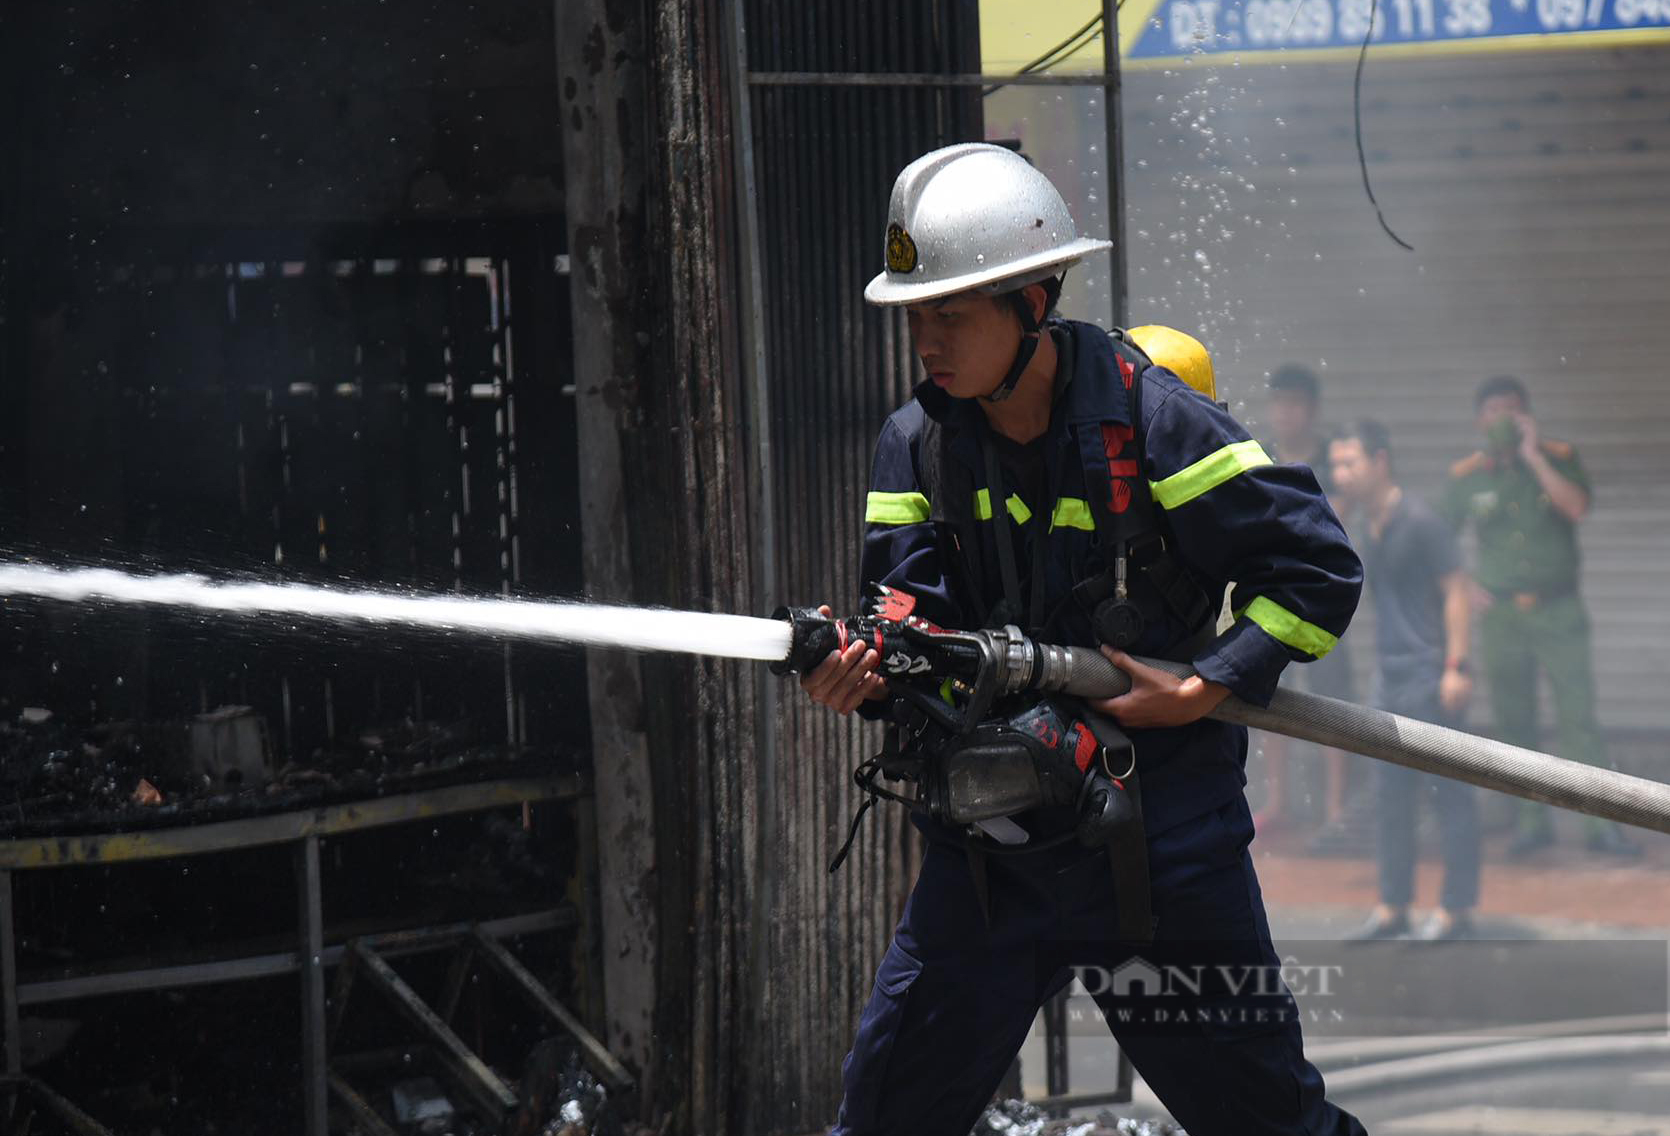 Hà Nội: Cháy lớn tại cửa hàng điện thoại trên đường Hồ Tùng Mậu - Ảnh 4.